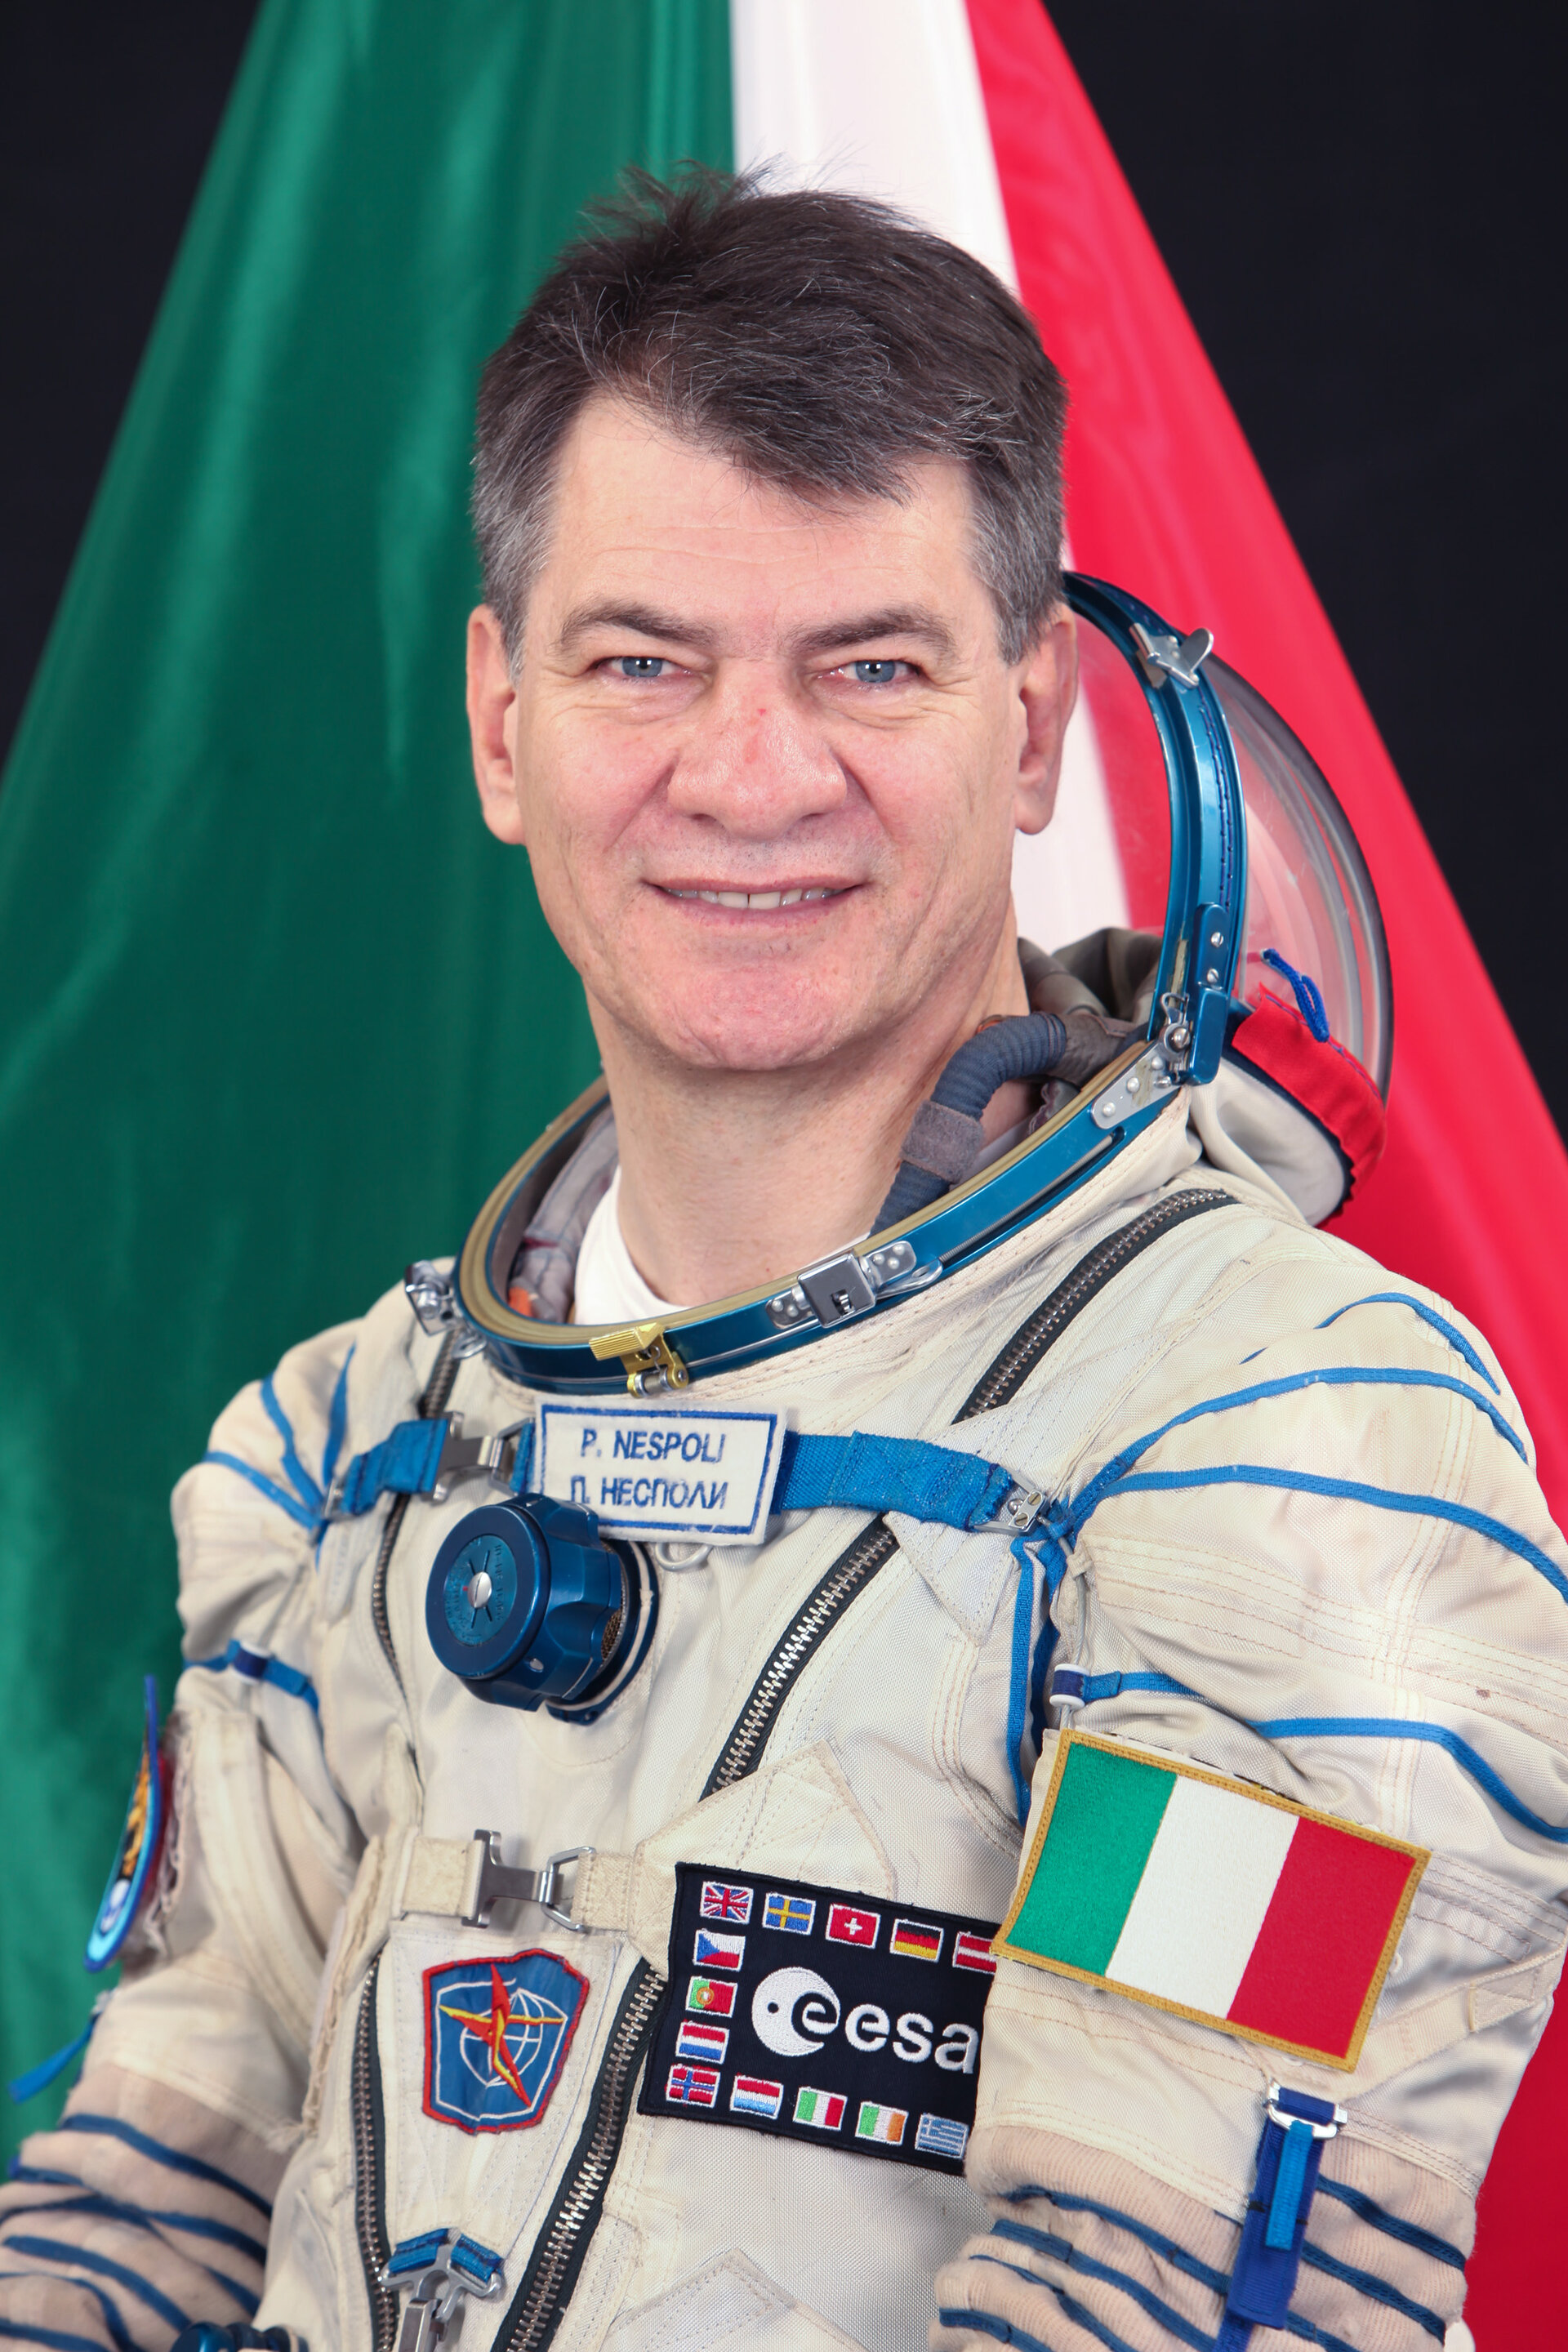 Paolo Nespoli